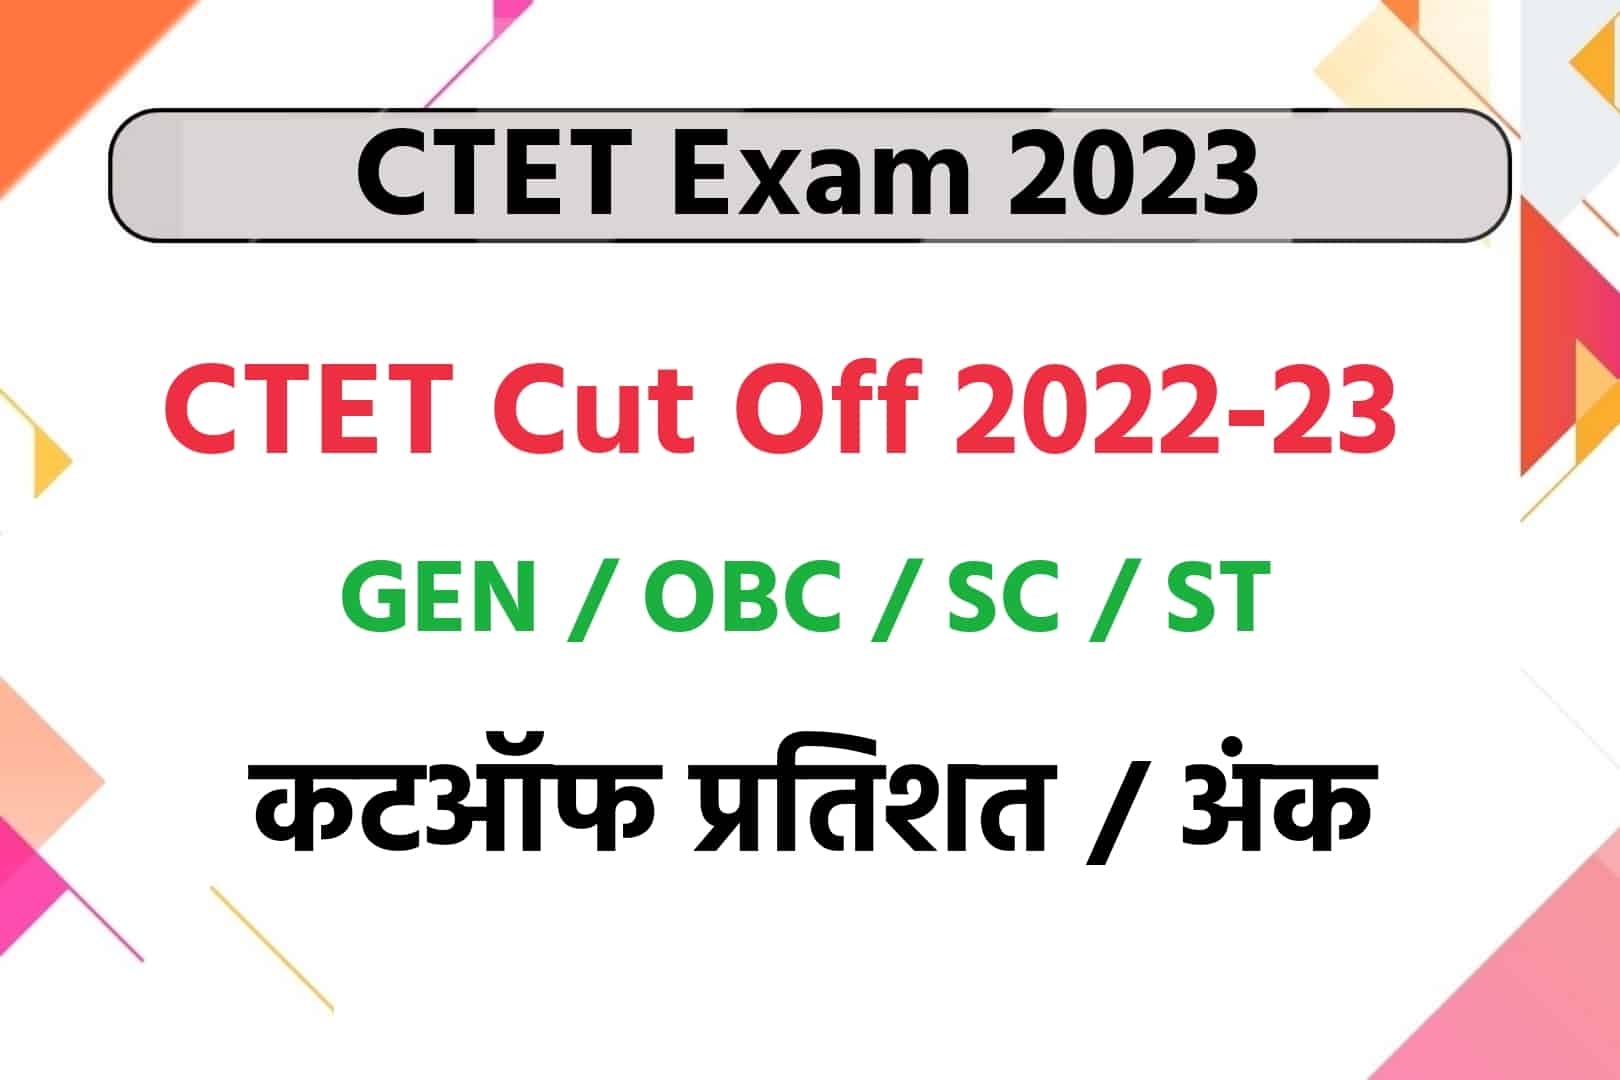 CTET Cut Off 2023 : देखें General, OBC, SC, ST, के लिए कटऑफ अंक